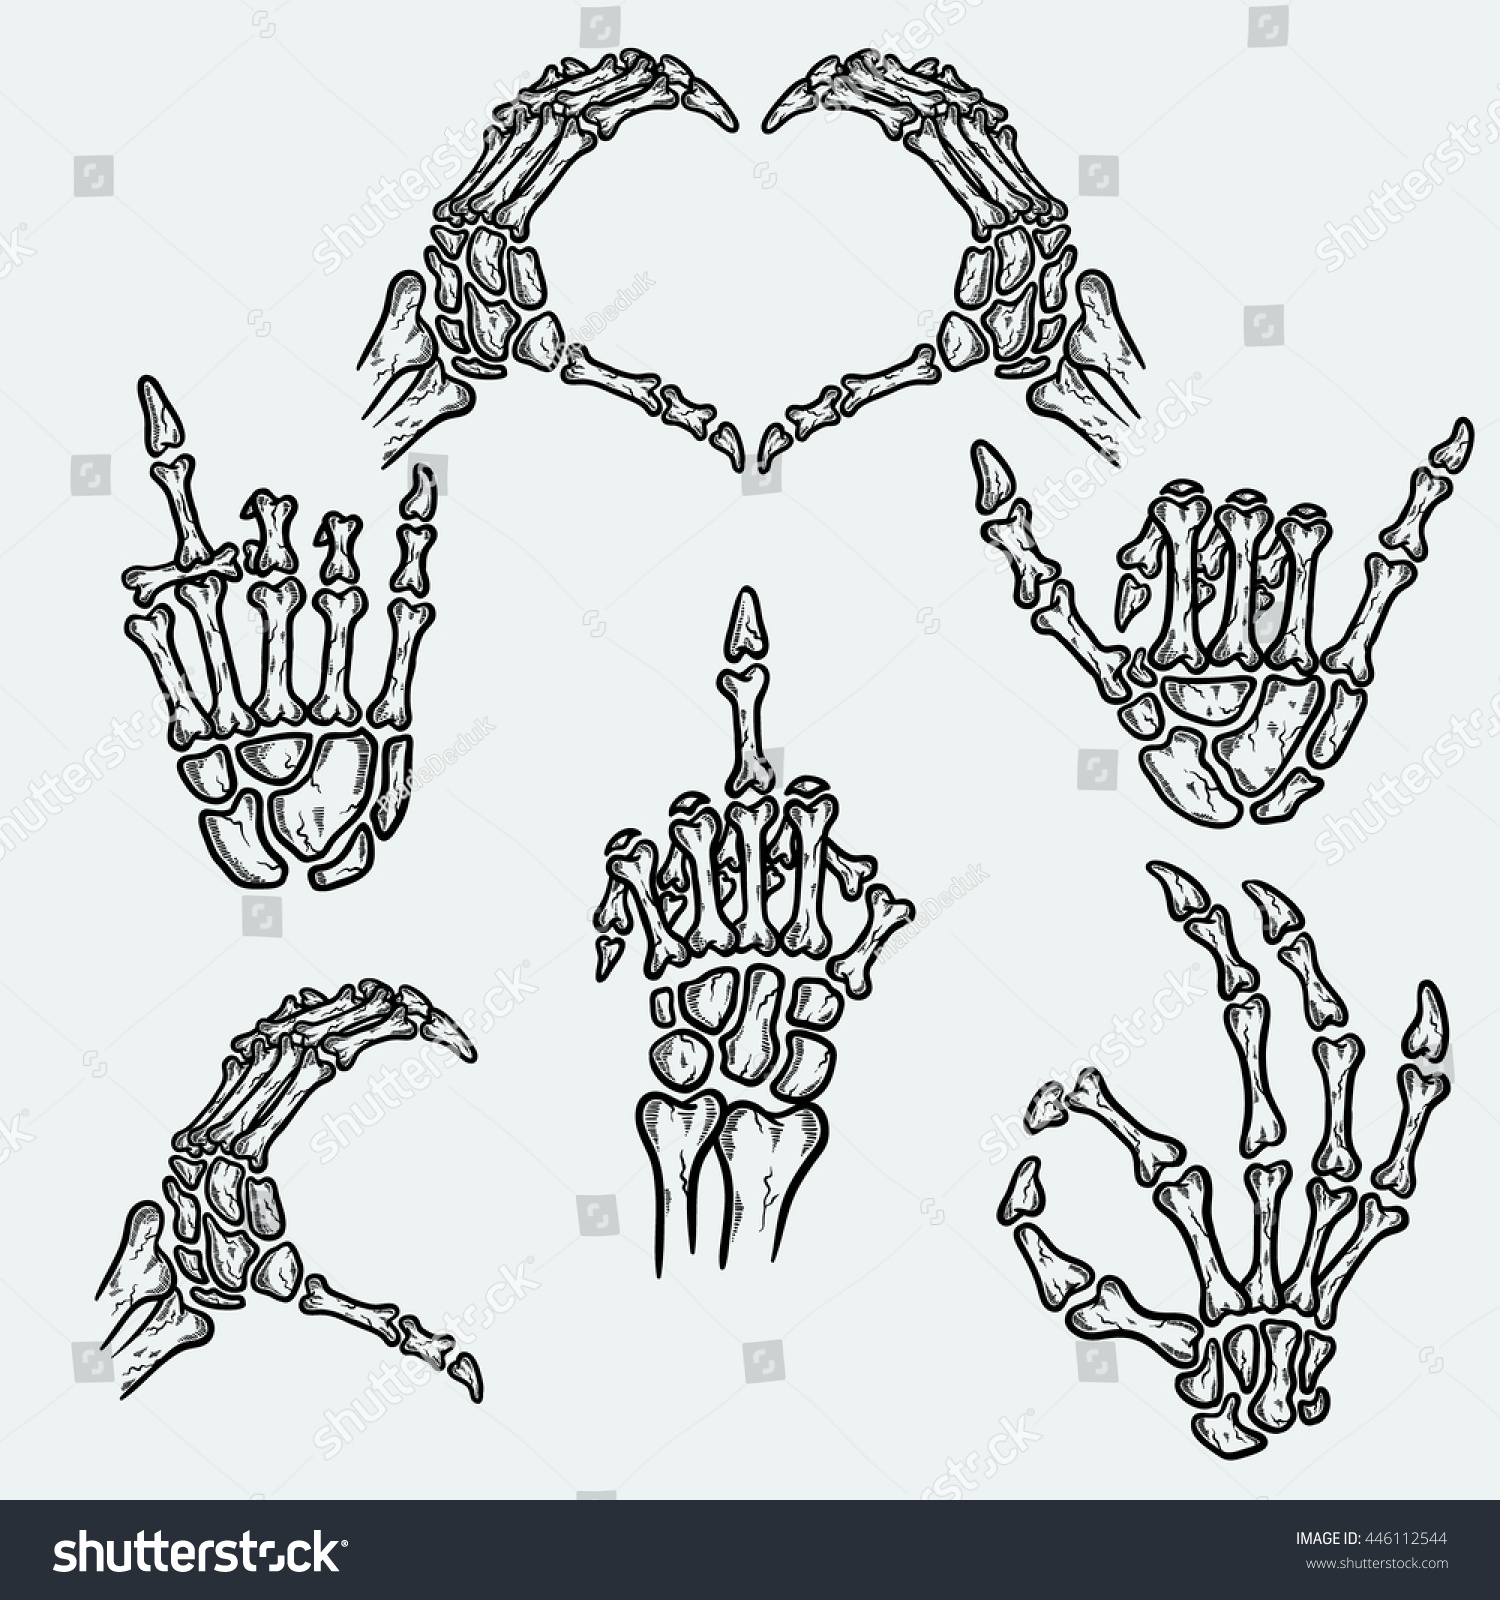 Скелеты показывают сердце руками